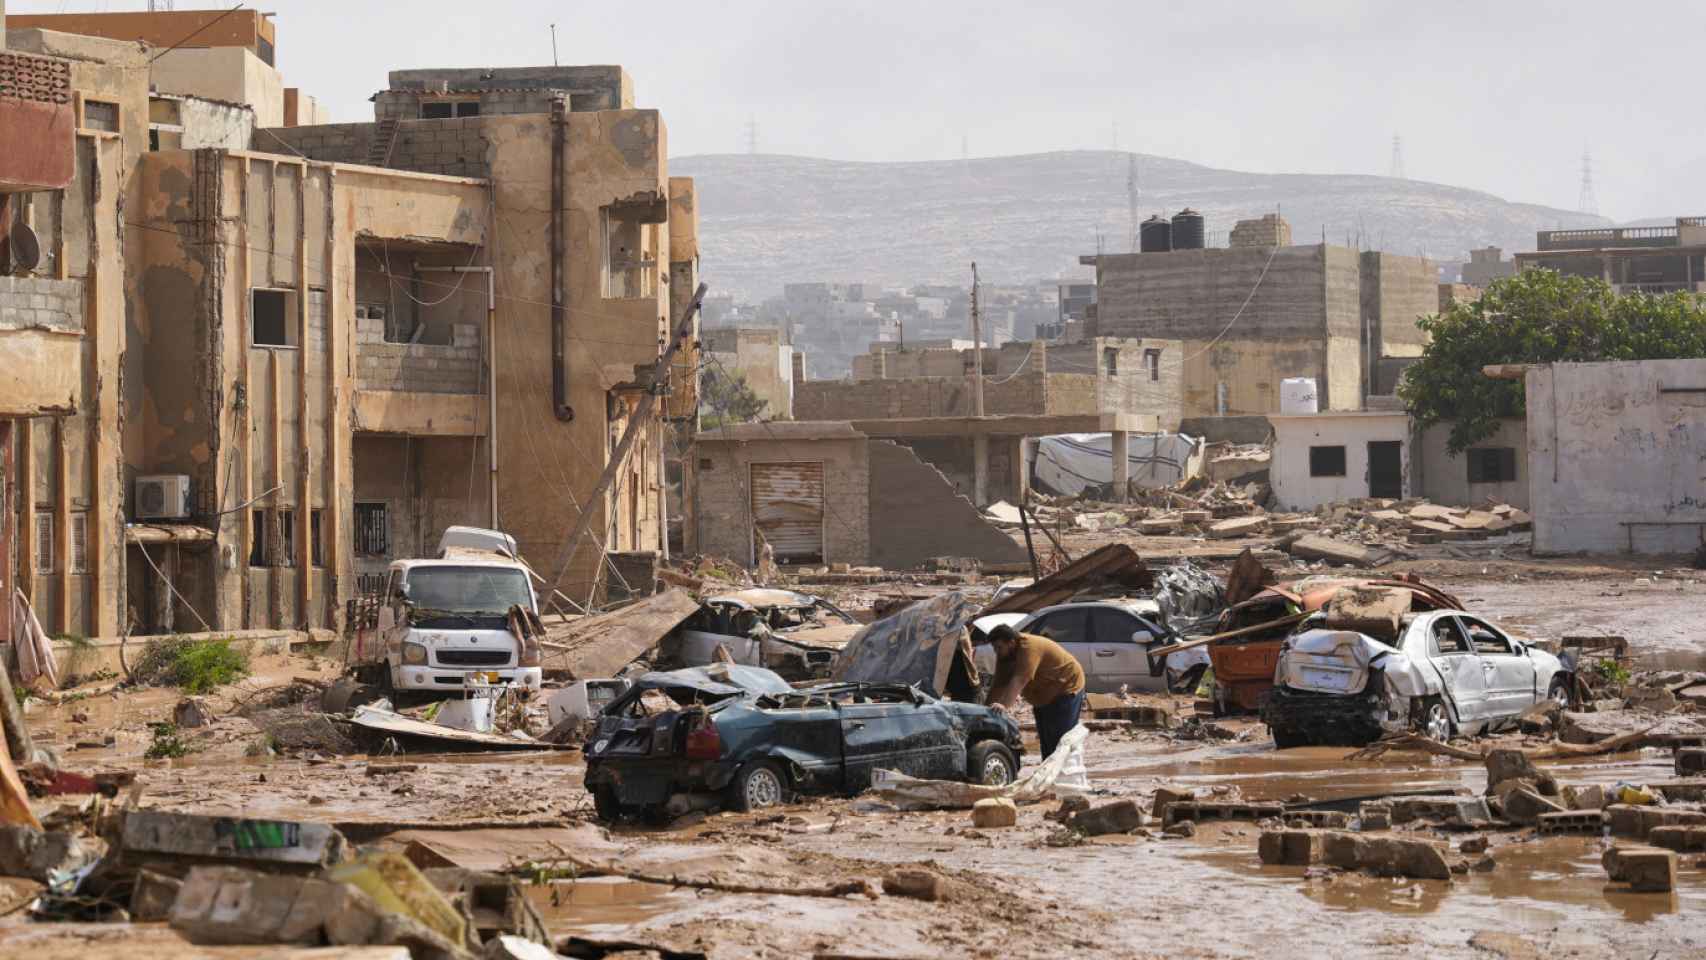 Vista general de la destrucción causada en la ciudad libia de Derna.